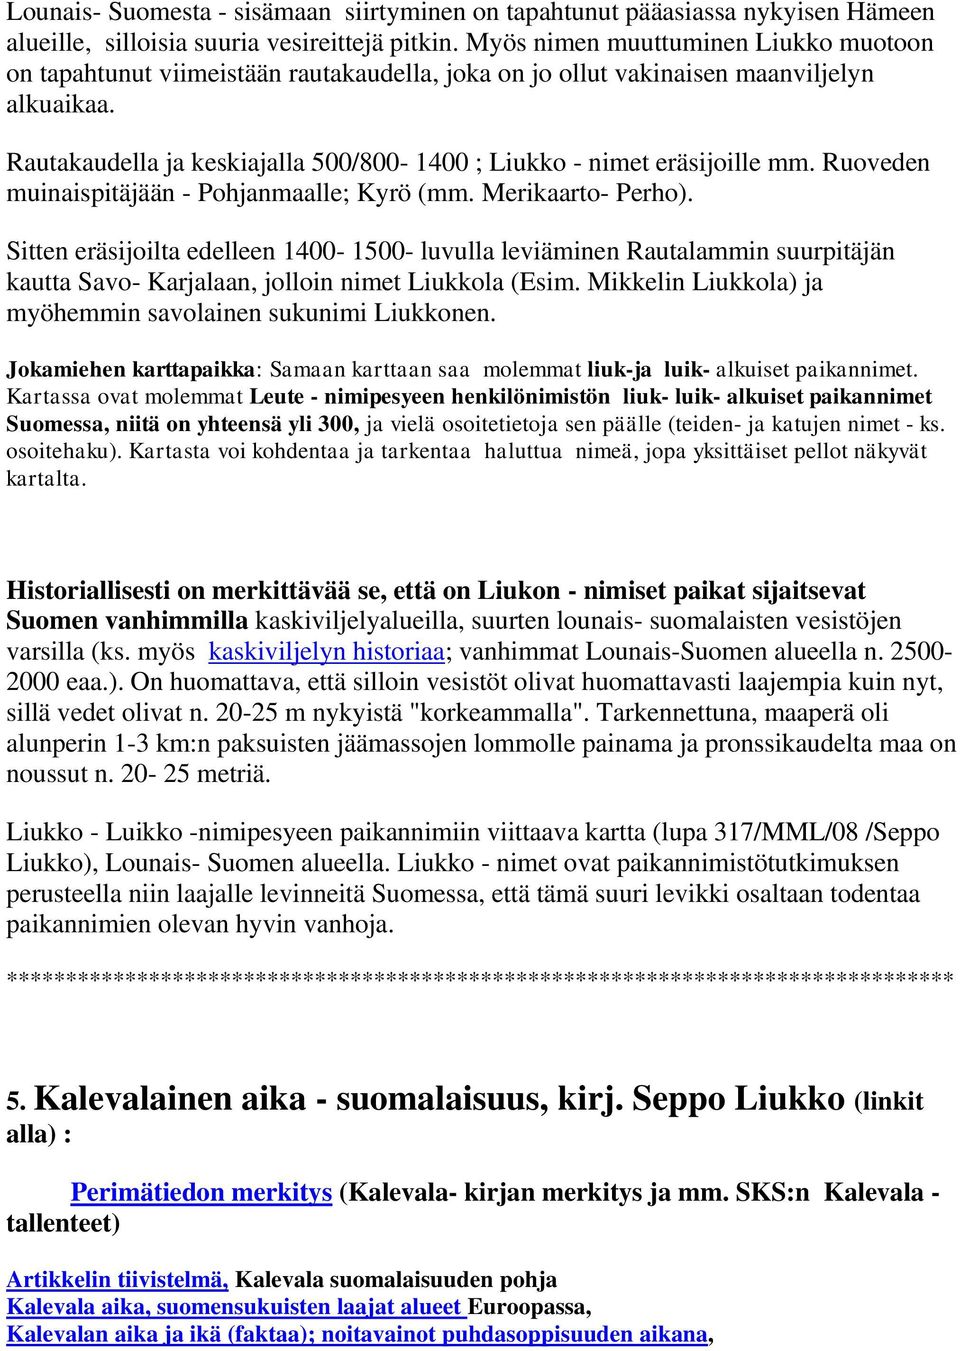 Rautakaudella ja keskiajalla 500/800-1400 ; Liukko - nimet eräsijoille mm. Ruoveden muinaispitäjään - Pohjanmaalle; Kyrö (mm. Merikaarto- Perho).